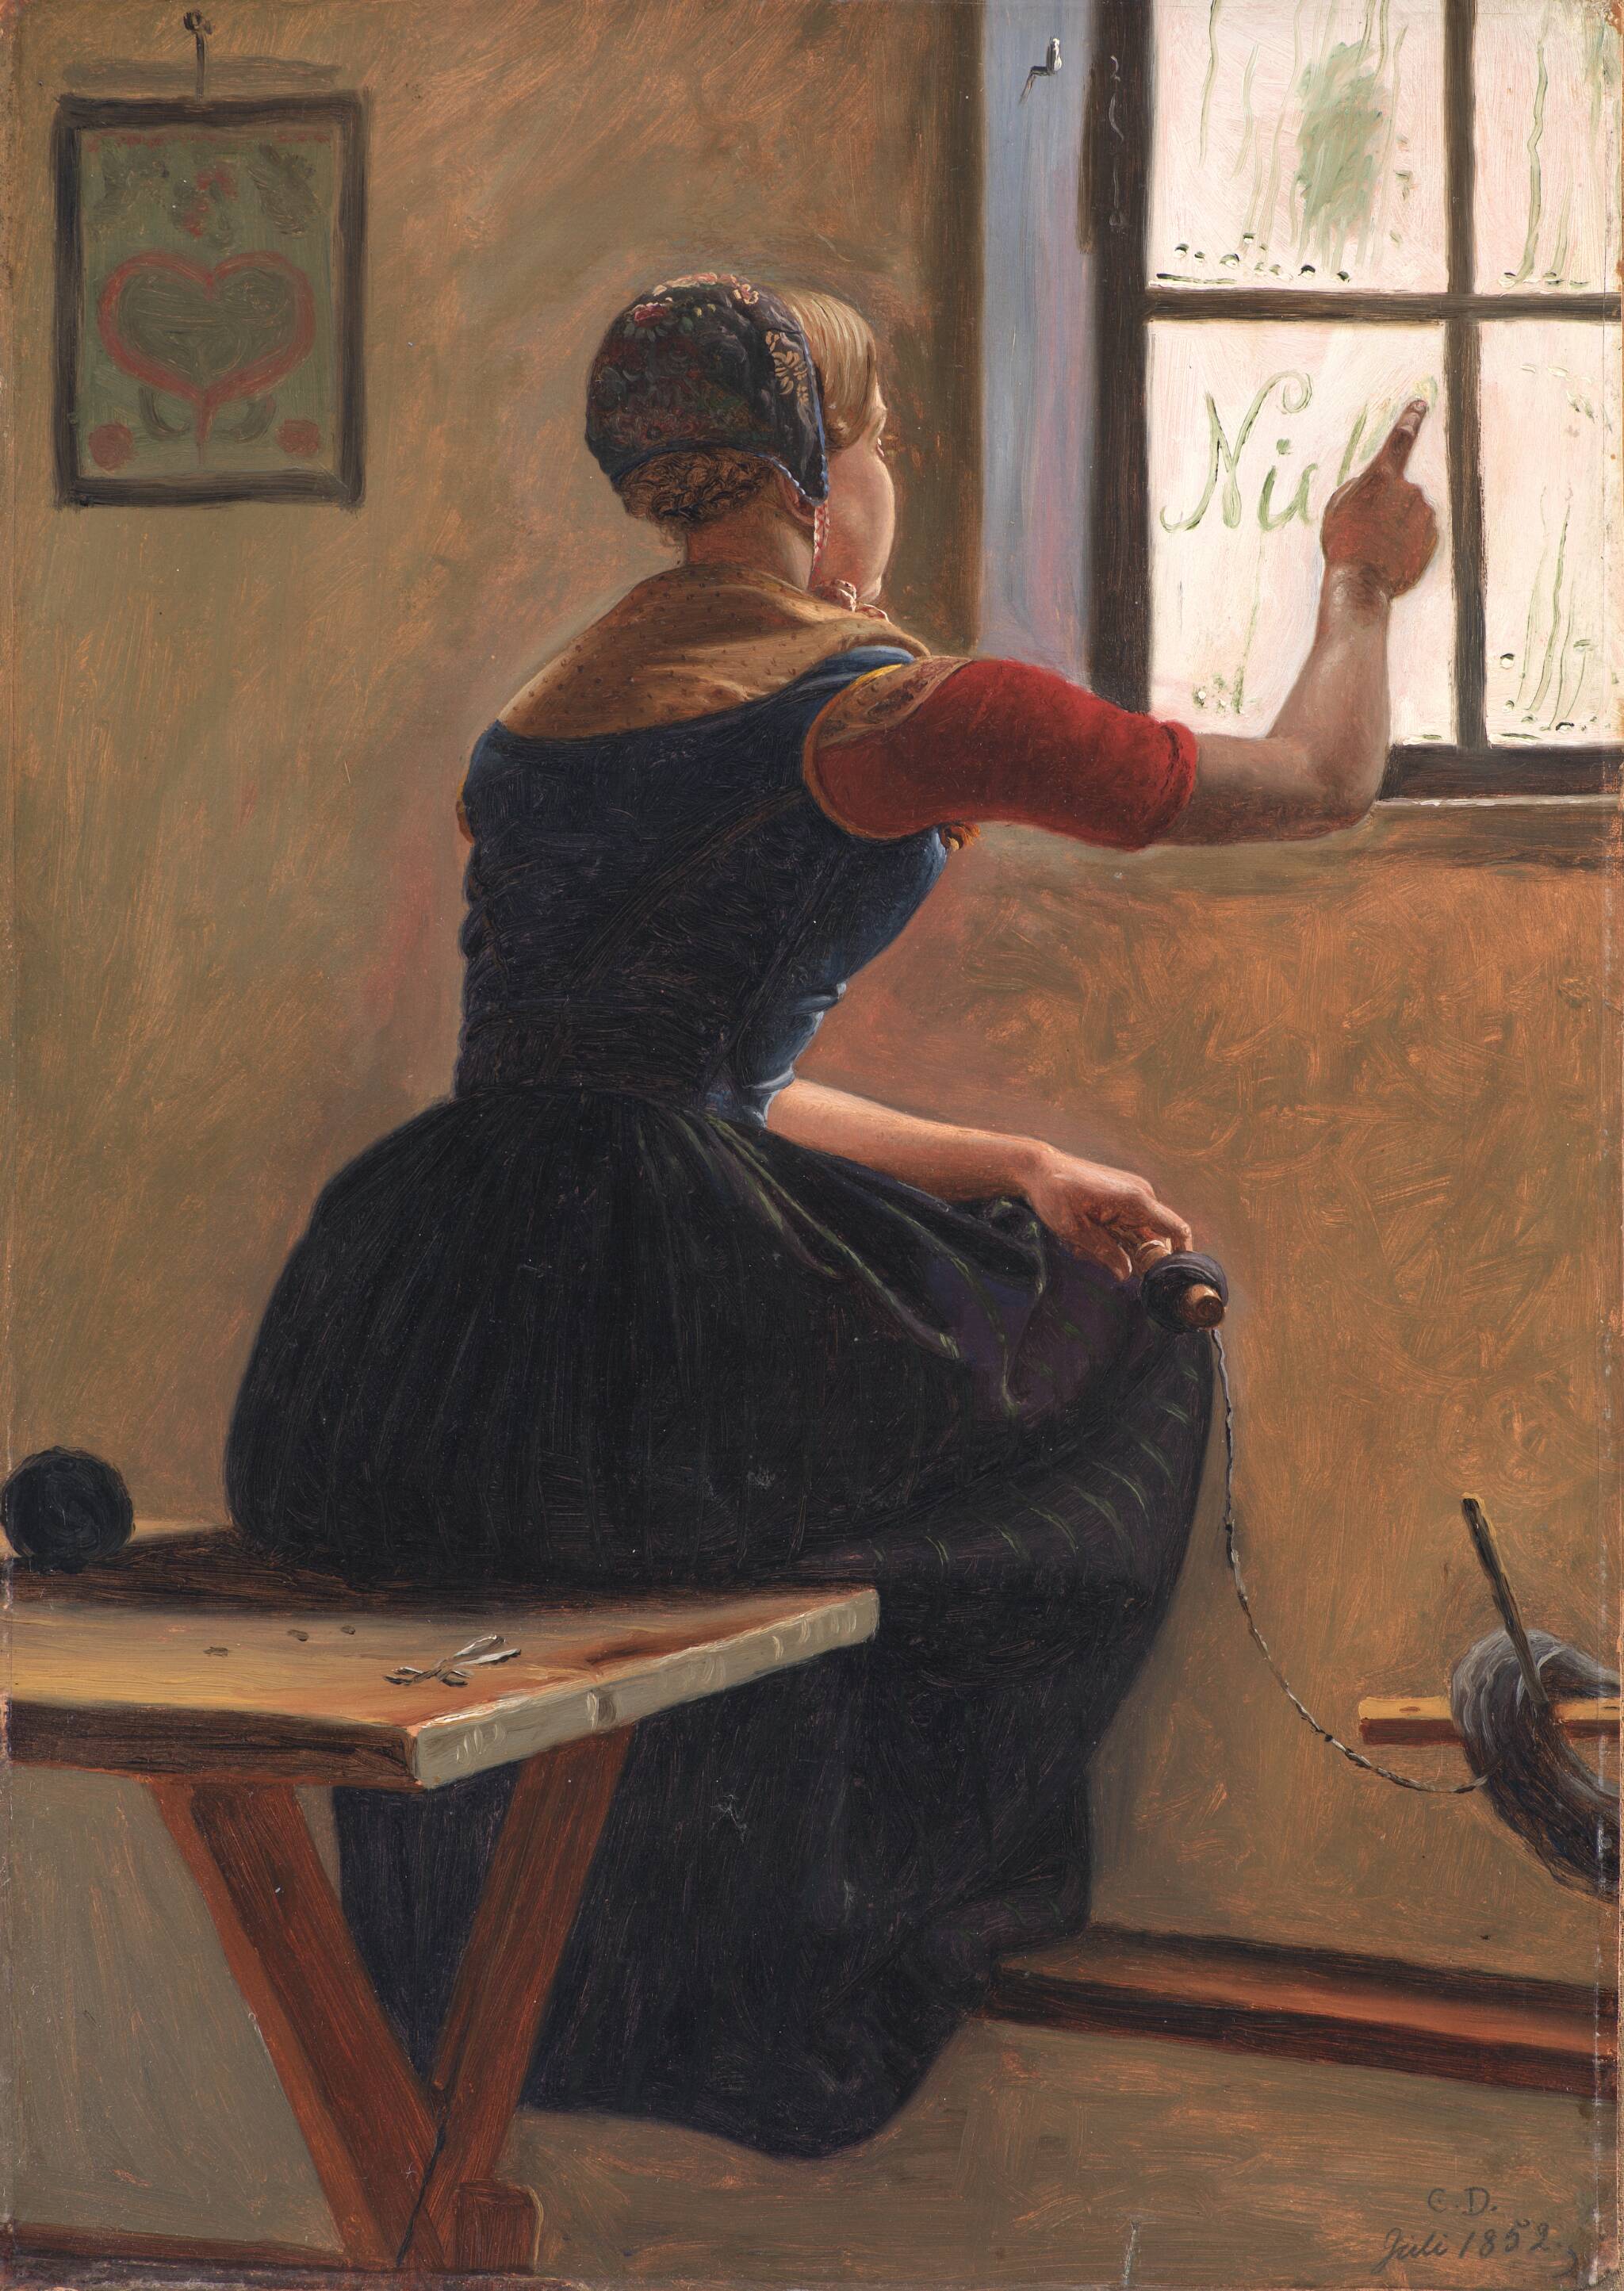 Jutská dívka píše jméno svého milého na zamlžené okno by Christen Dalsgaard - 1852 - 44,5 x 31,5 cm 